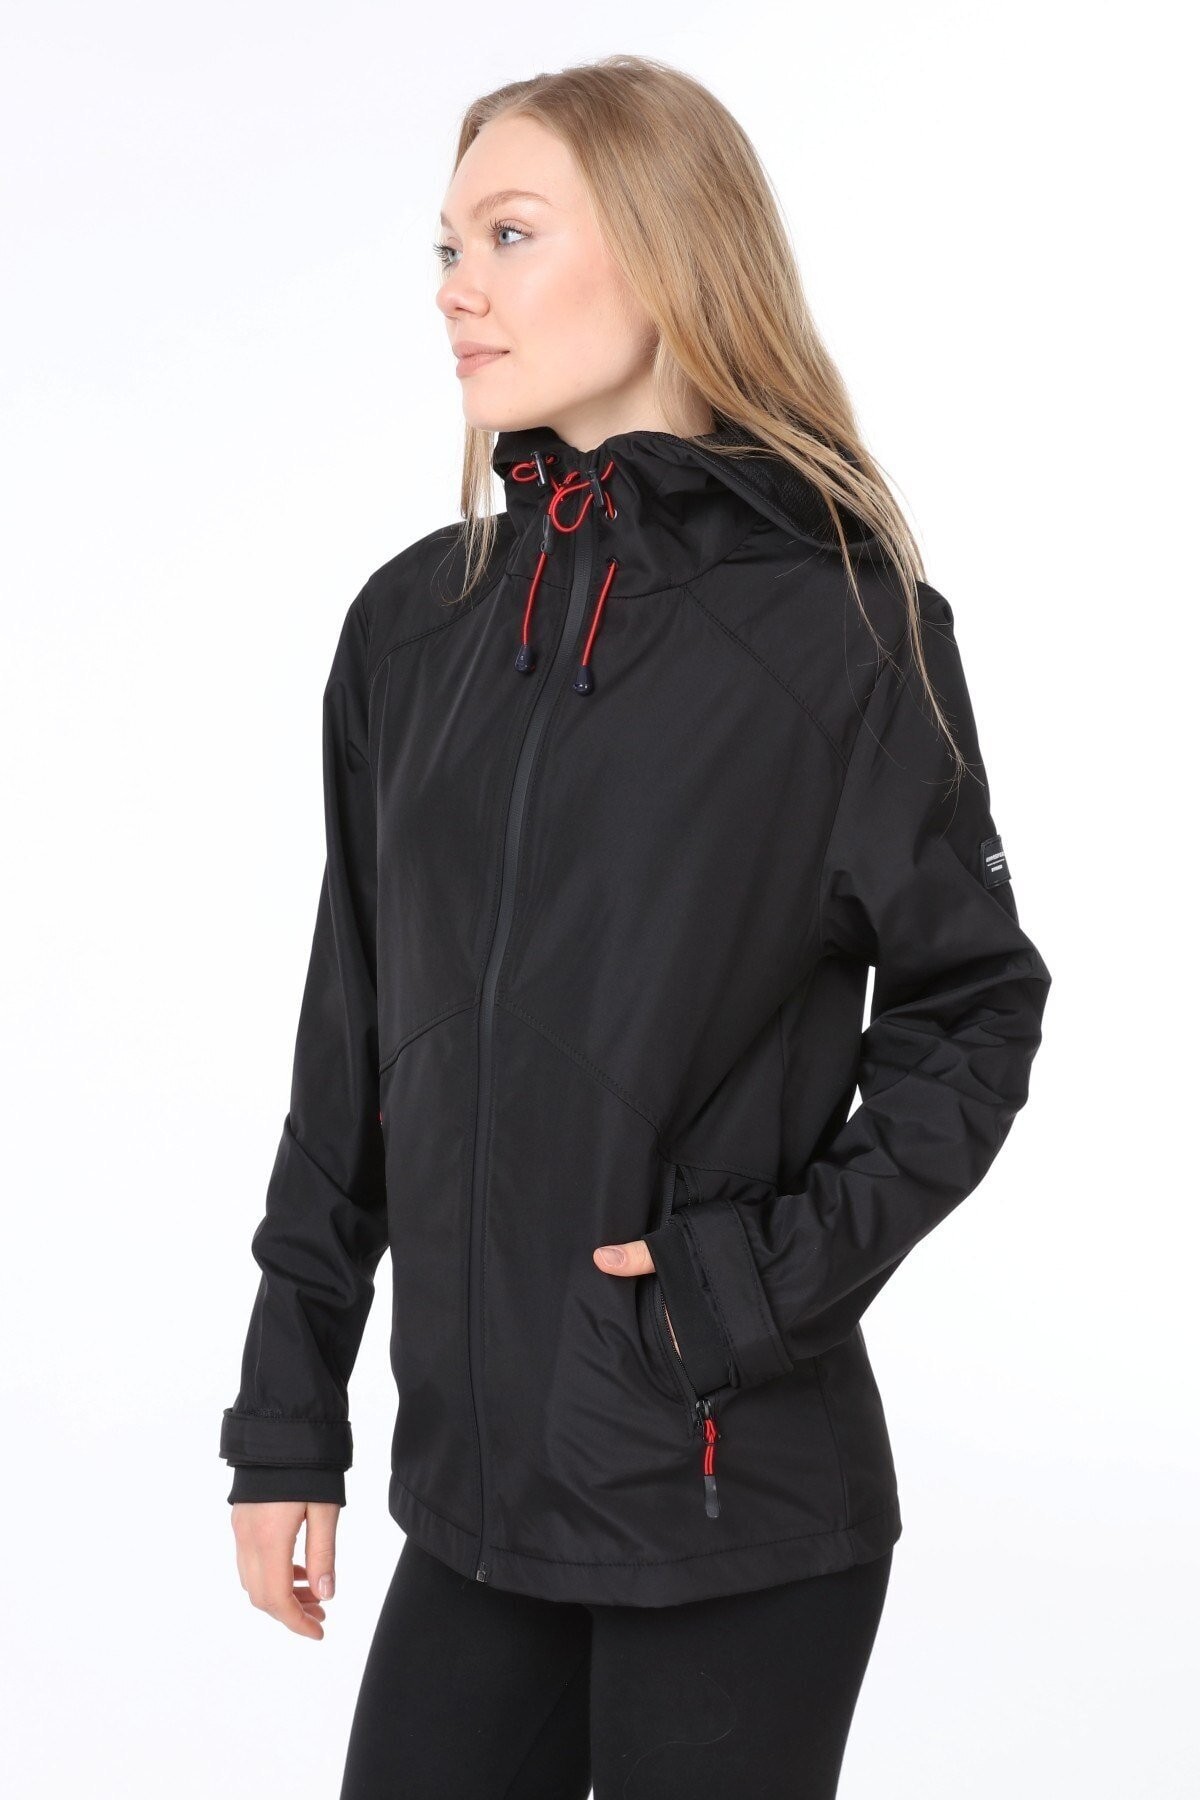 Ghassy Co.Kadın Rüzgarlık/Yağmurluk Omuz Detaylı Mevsimlik Taş Spor Ceket